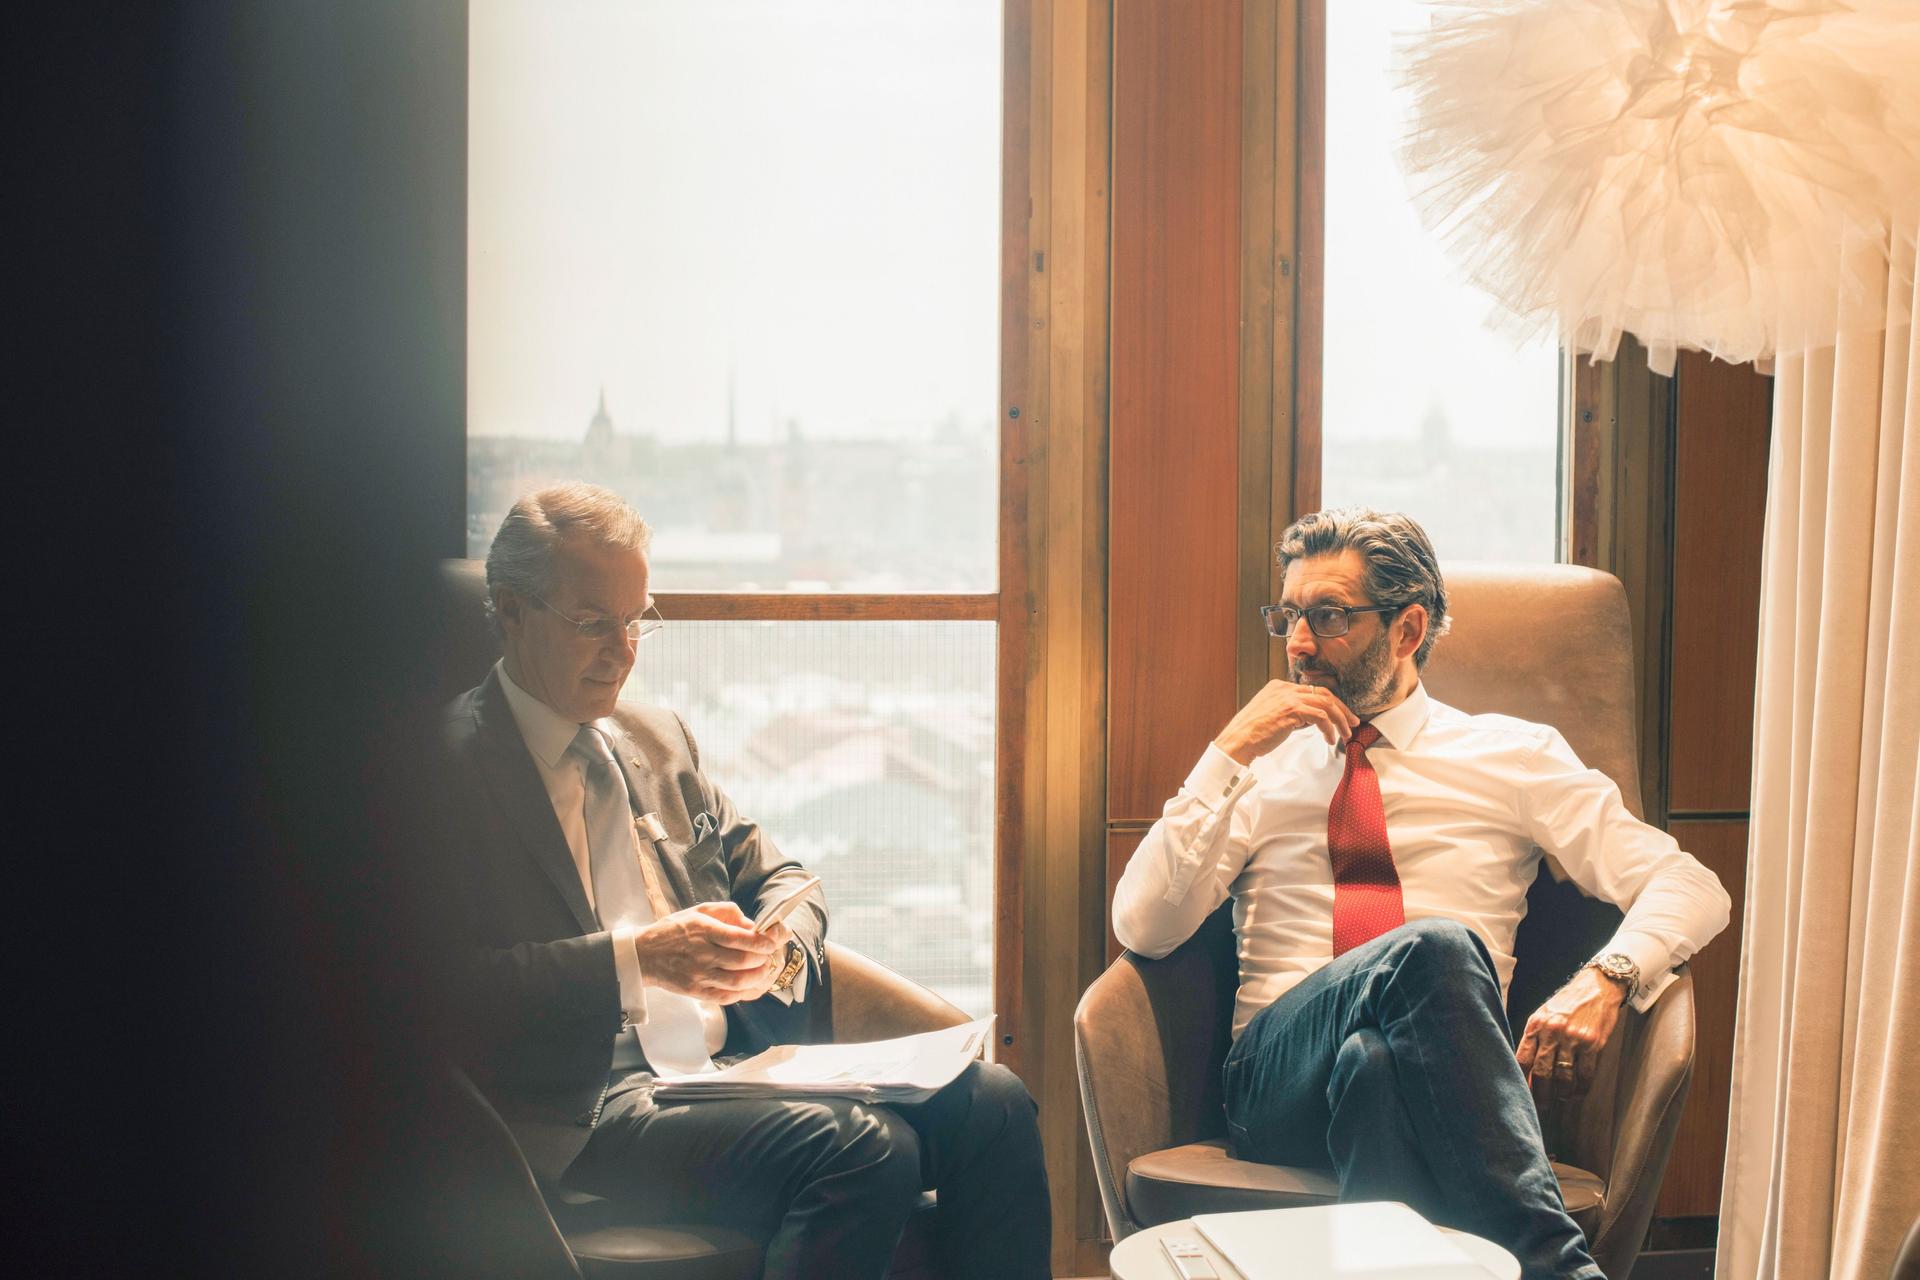 Zwei Männer in Business Kleidung sitzen diskutierend vor einem großen Fenster.